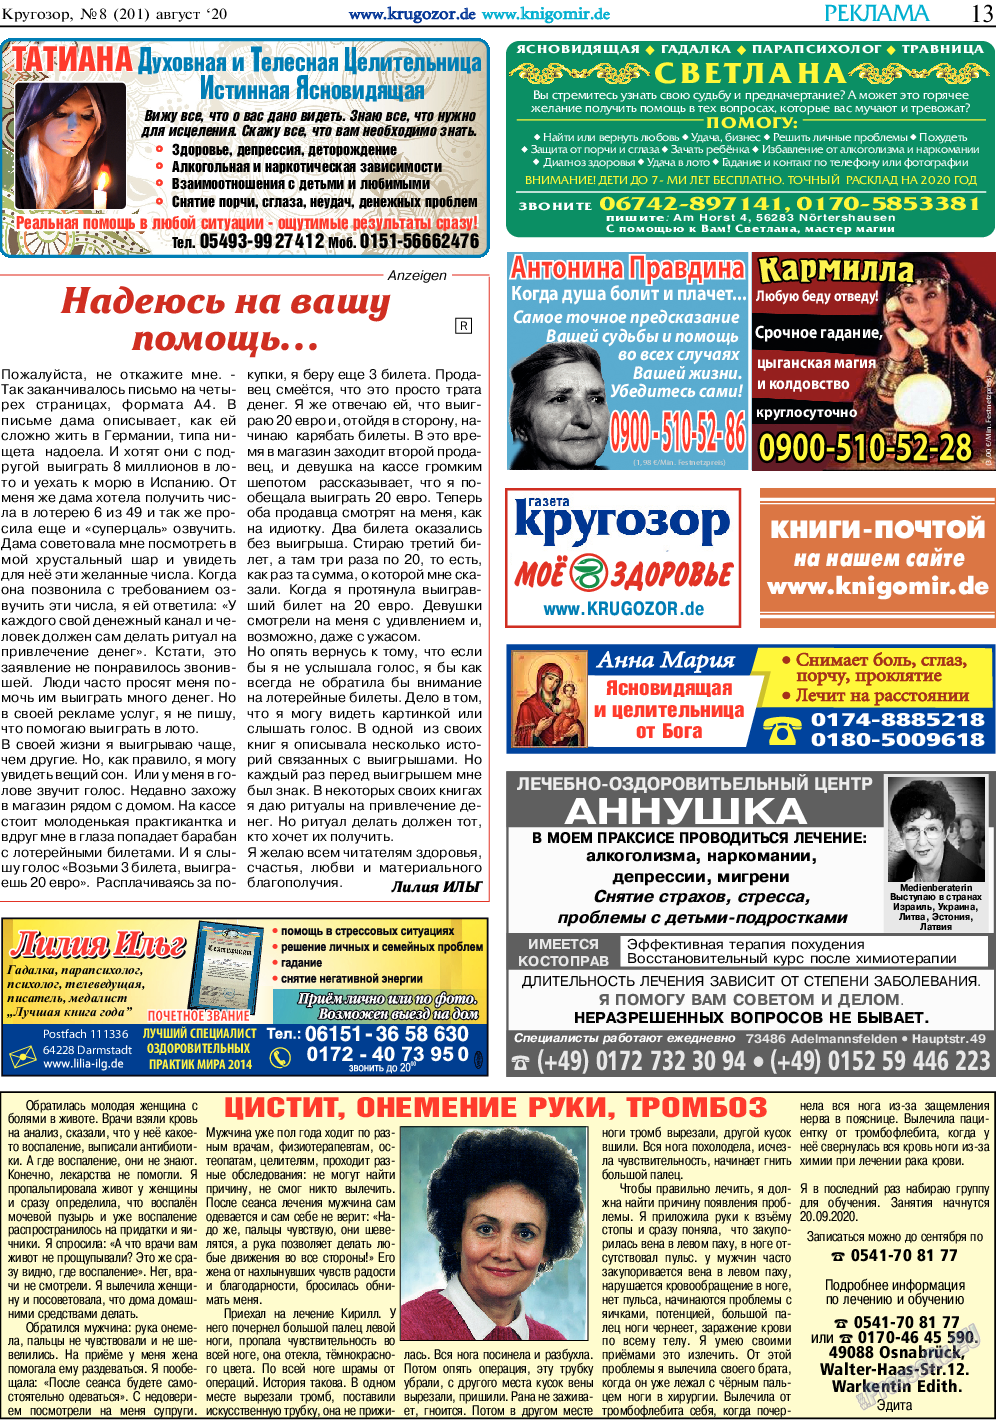 Кругозор, газета. 2020 №8 стр.13